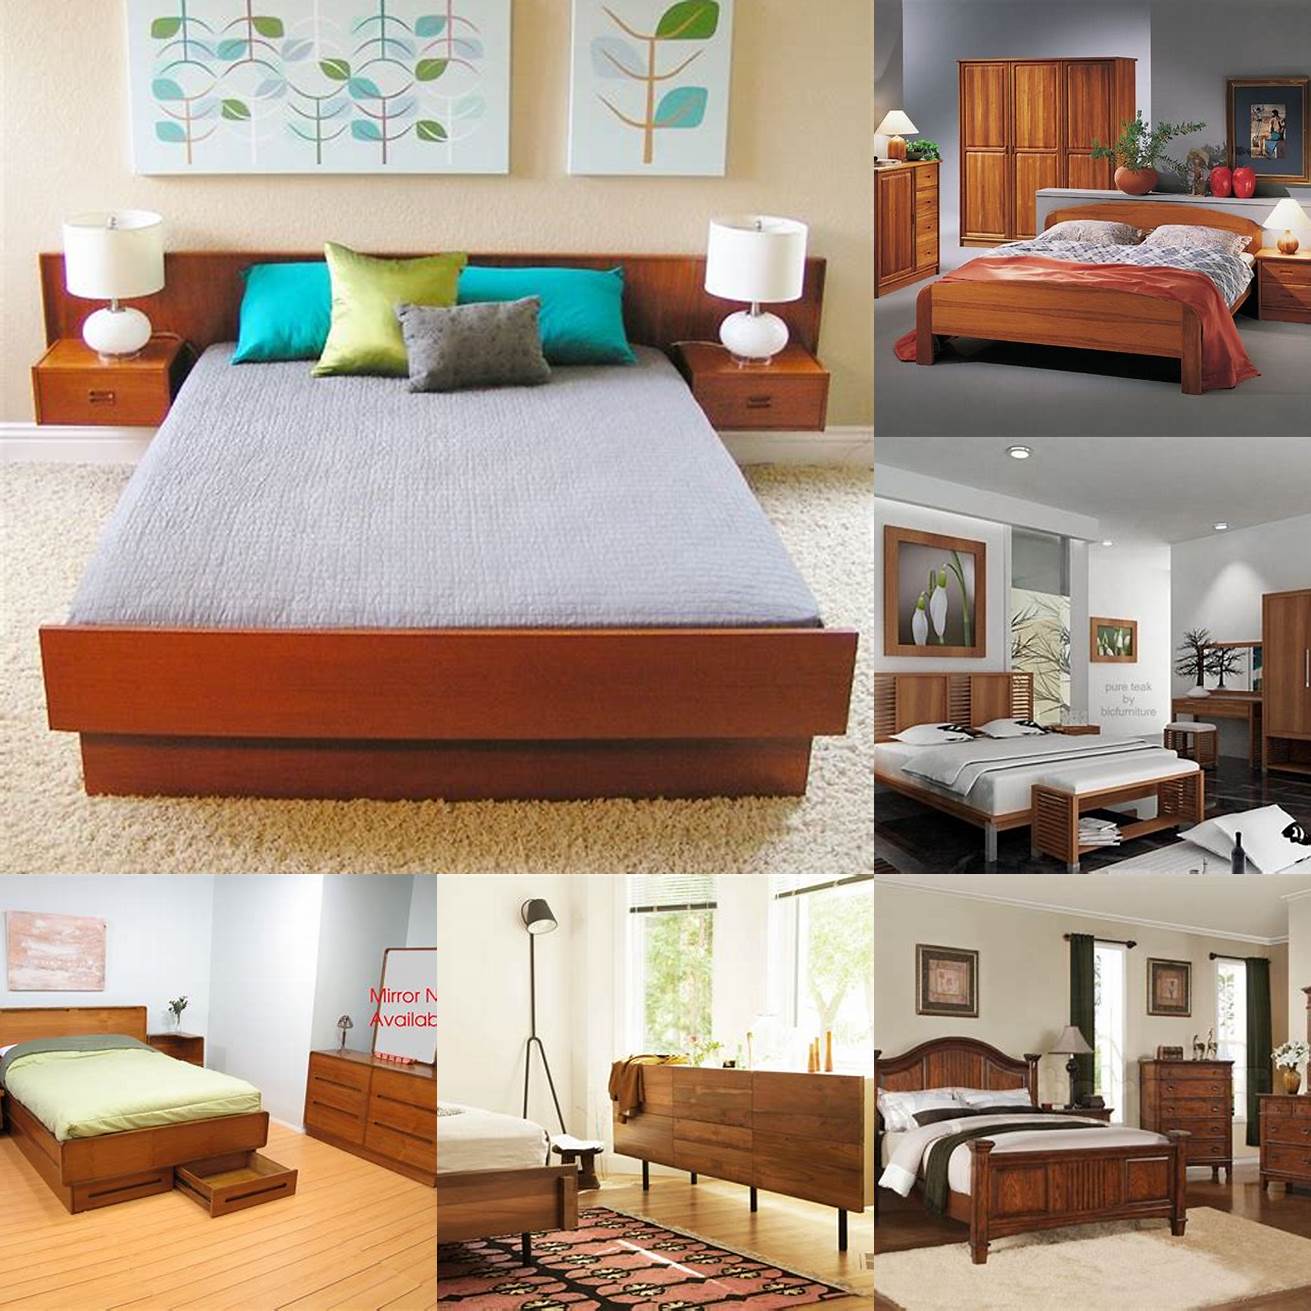 Styles of teak bedroom furniture